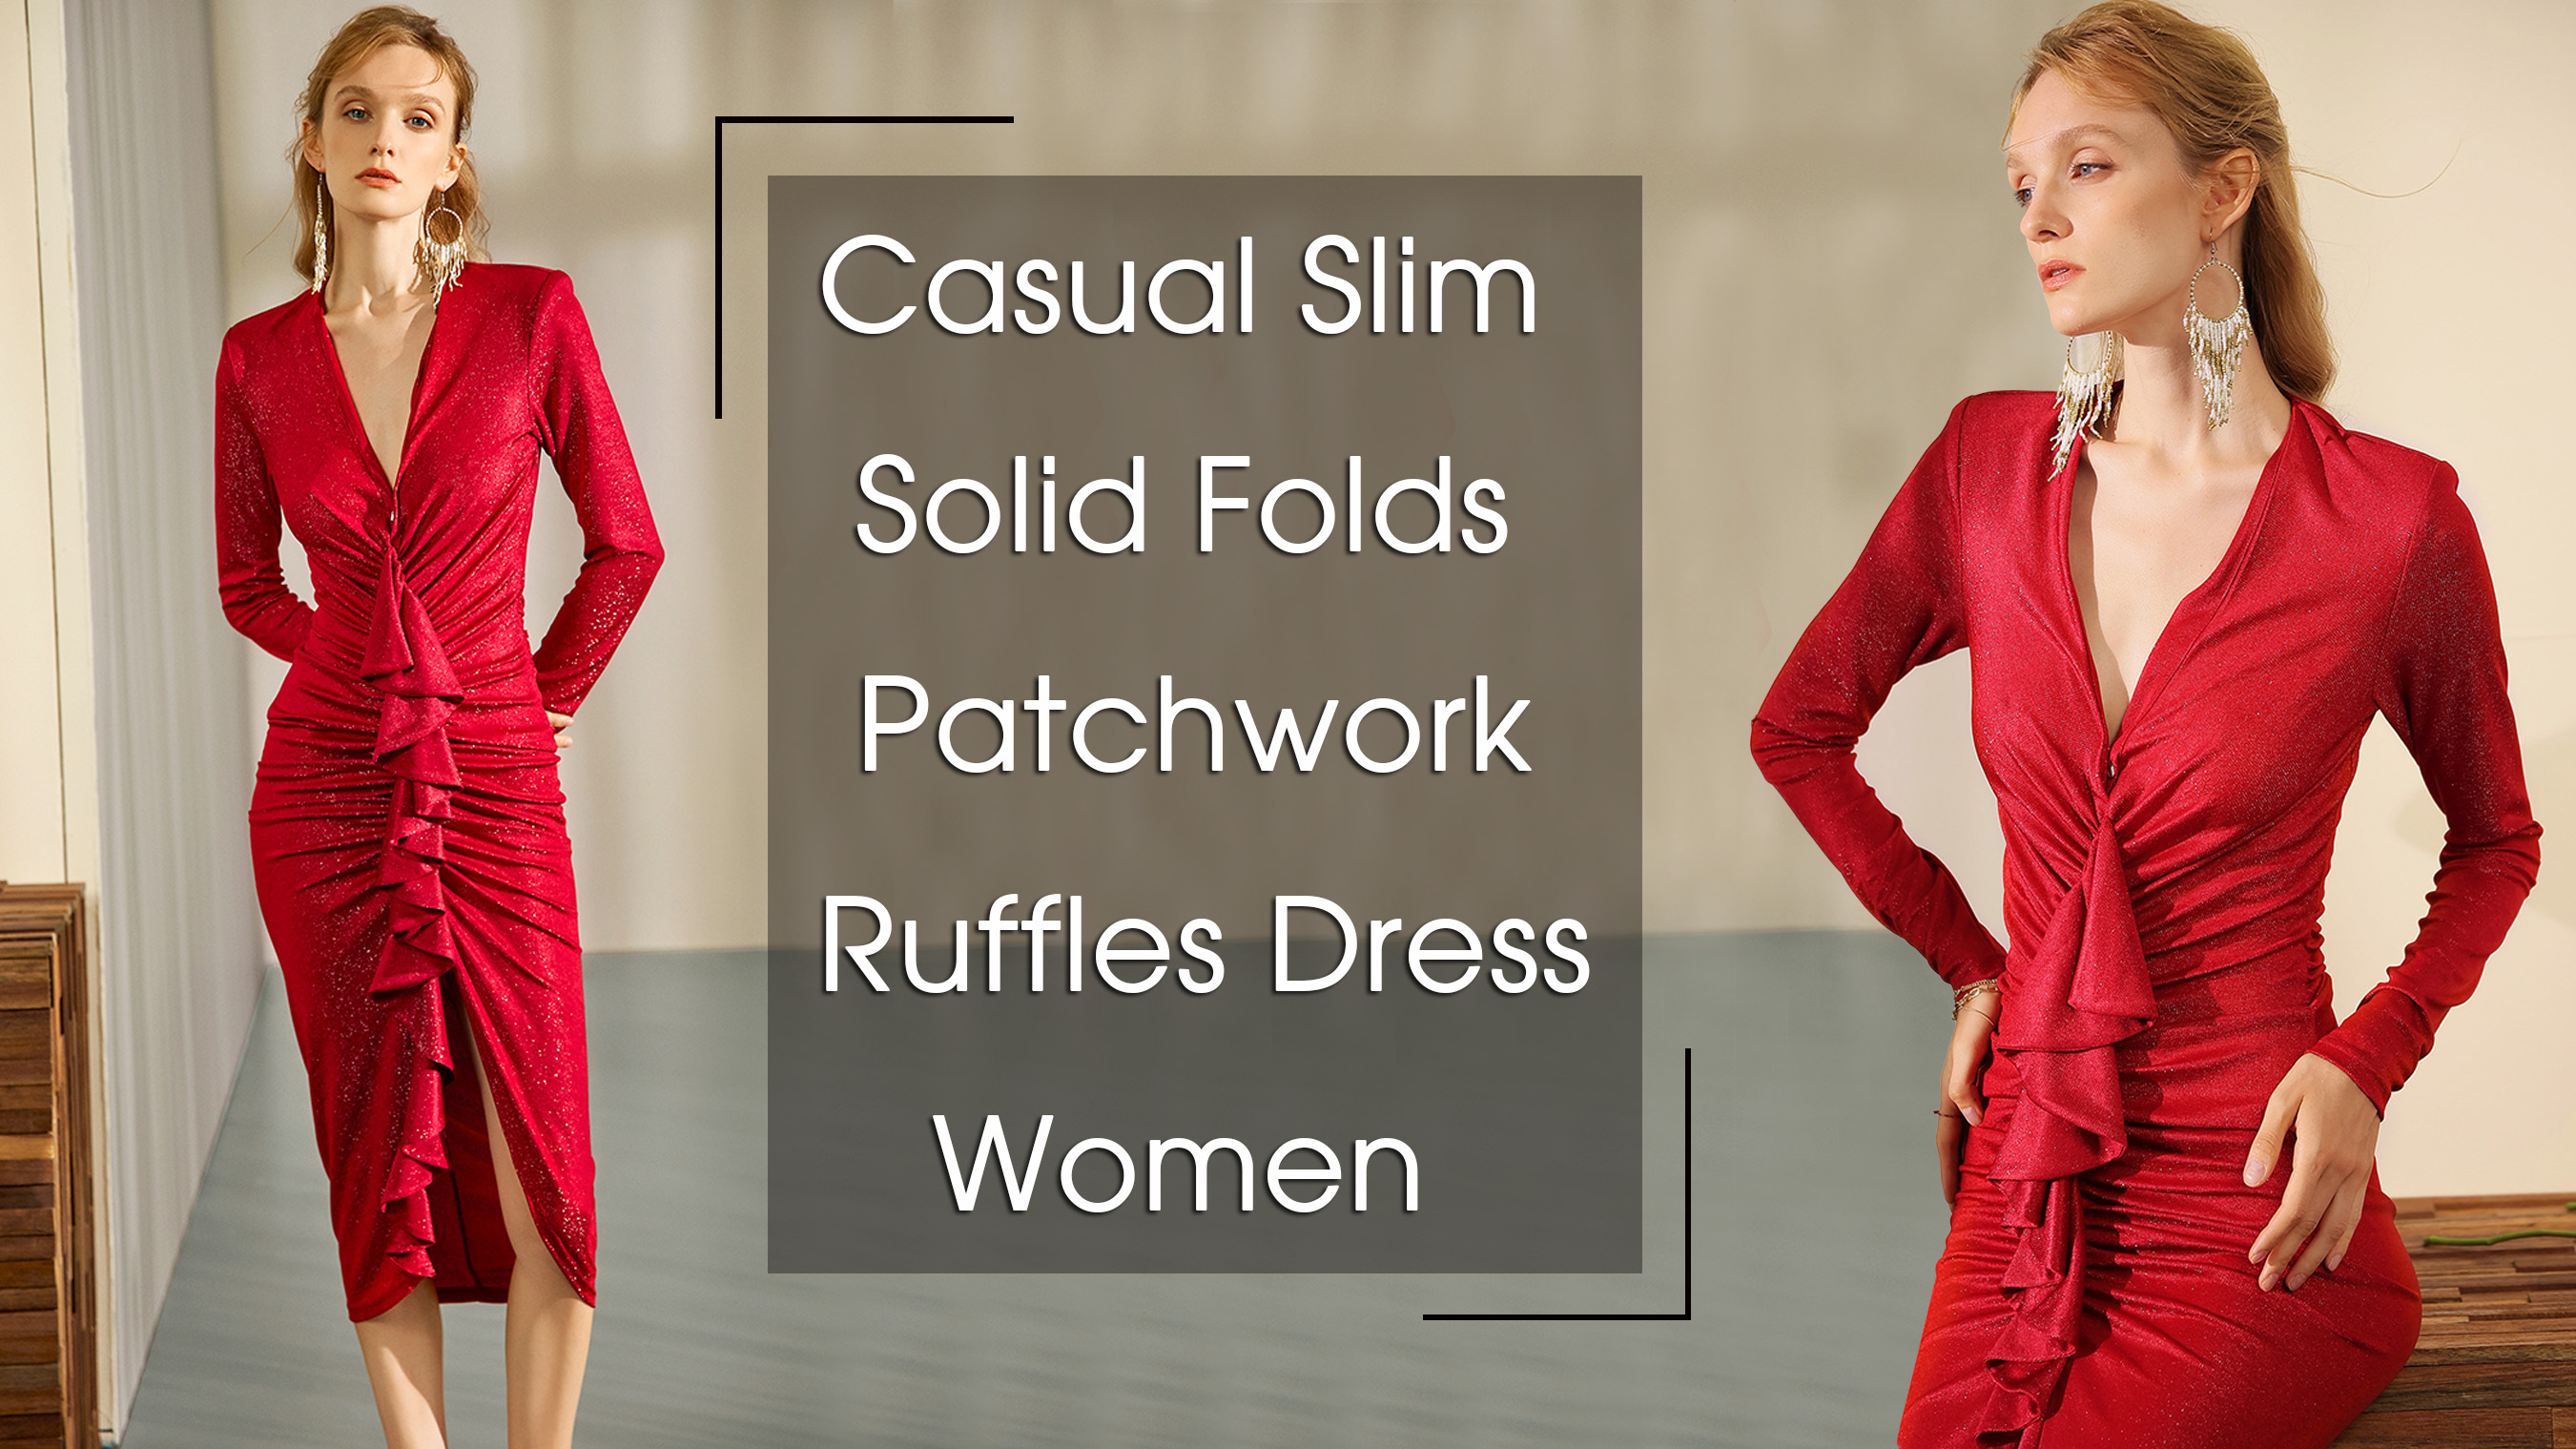 क्याजुअल सोलिड फोल्ड्स प्याचवर्क रफल्स ड्रेस फिमेल फेसन अटम २०२२ नयाँ वी नेक लामो बाहुला पोशाक महिलाहरूको लागि